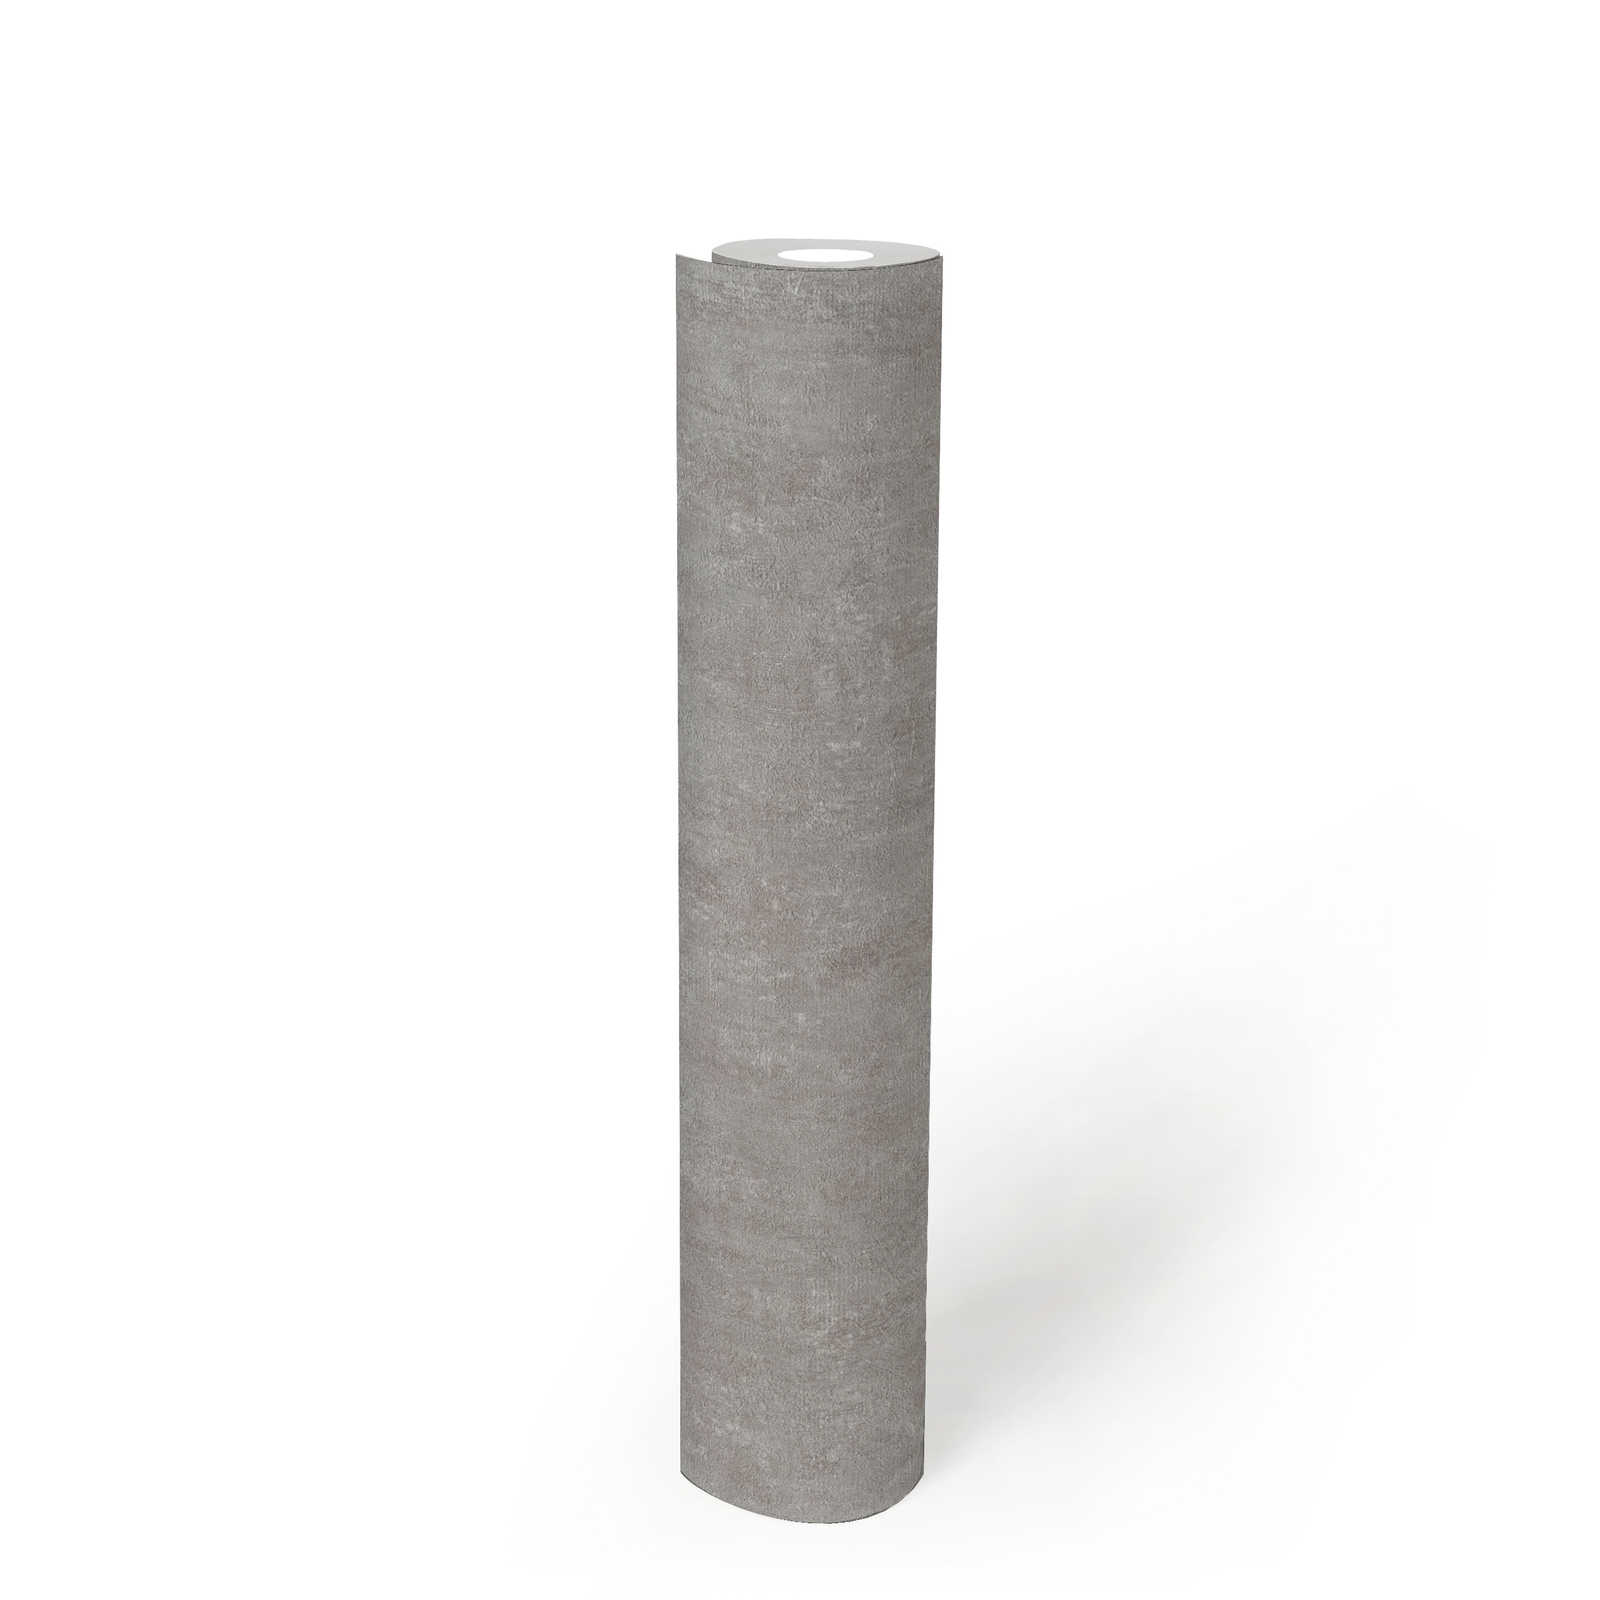             Grey wallpaper plaster look design with texture effect - grey
        